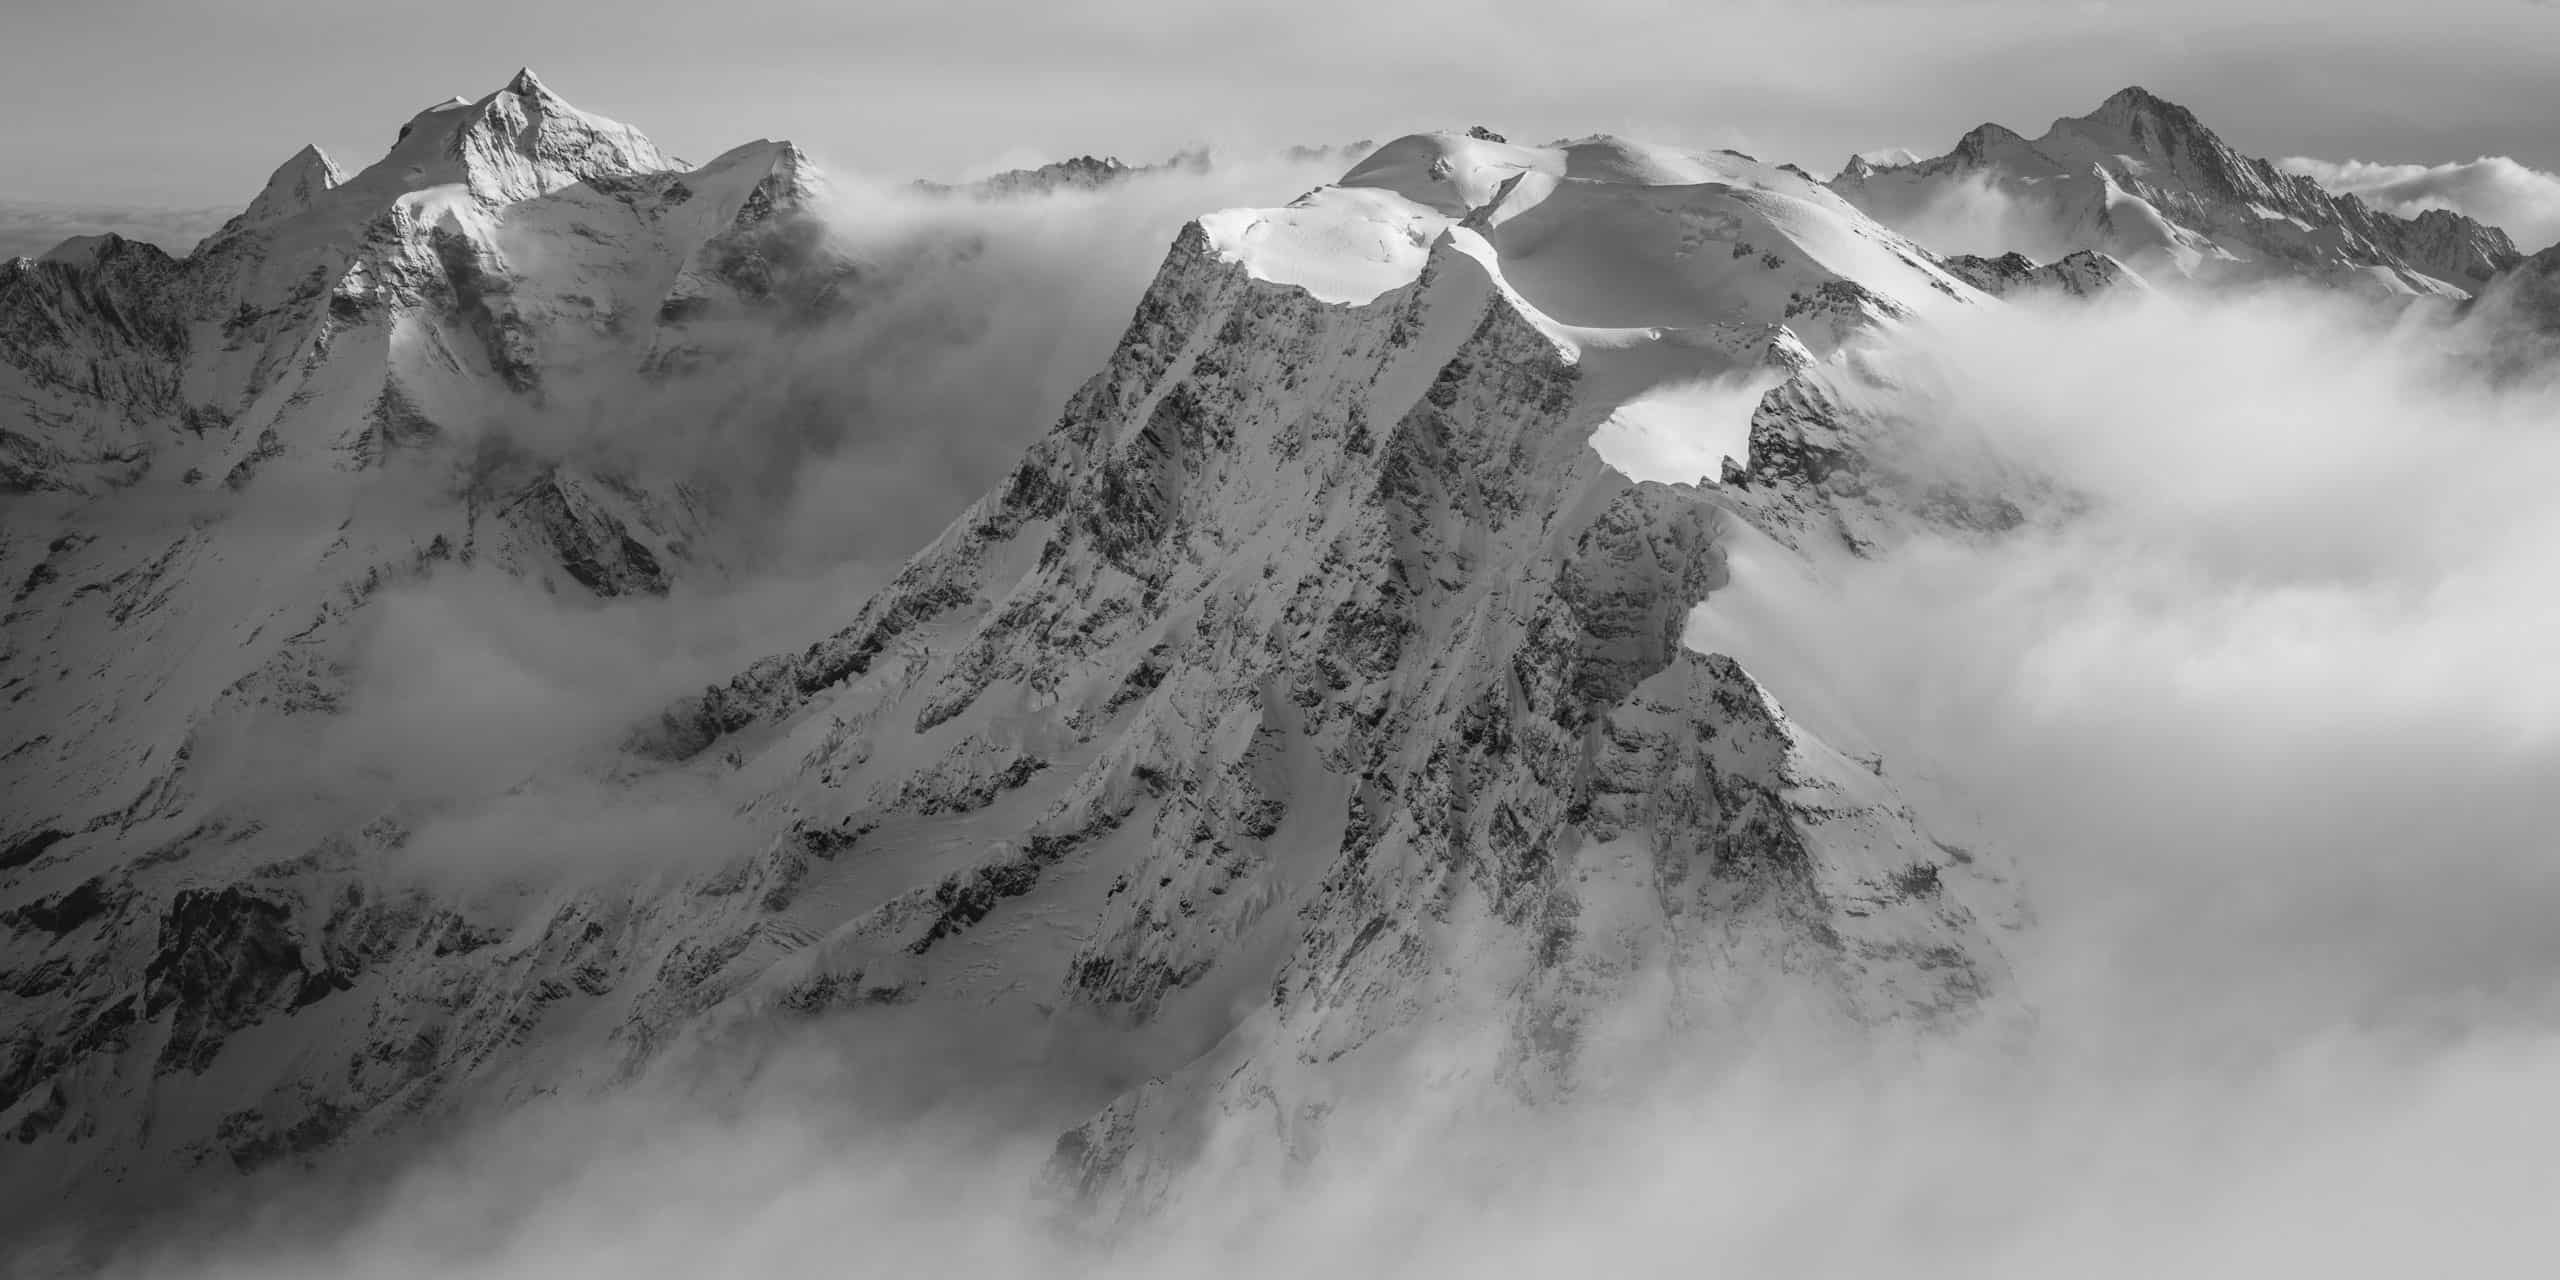 alpes bernoises panorama : photo panoramique noir et blanc des montagnes suisses